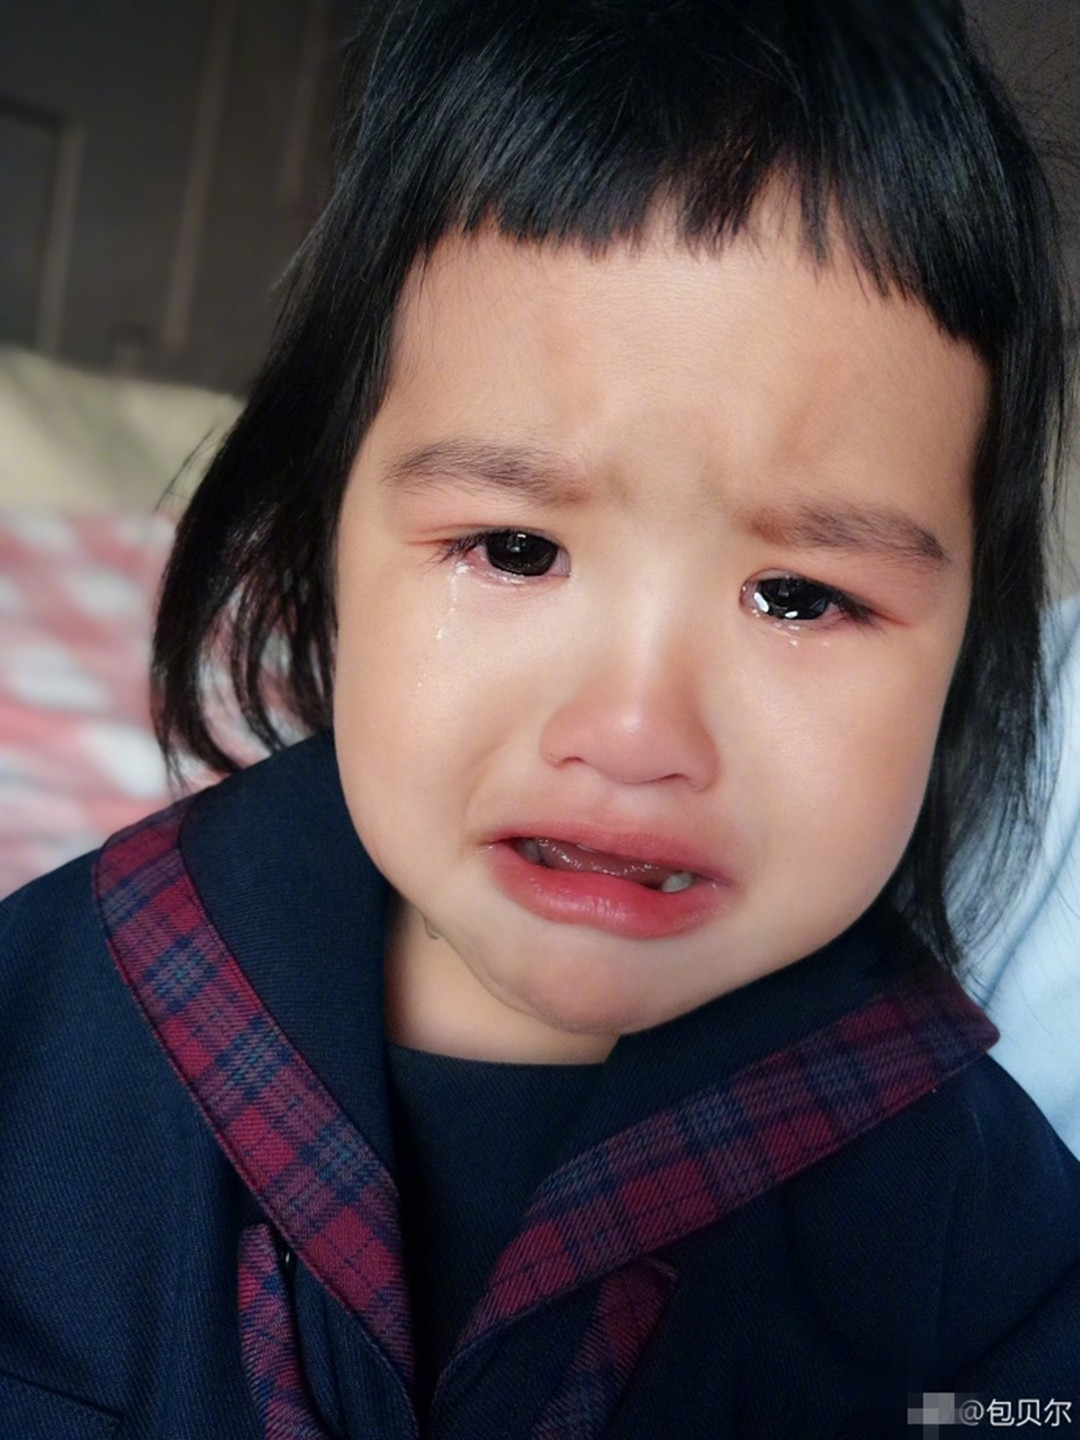 饺子满脸泪水好委屈,一脸"生无可恋"的表情真是让人心疼啊.